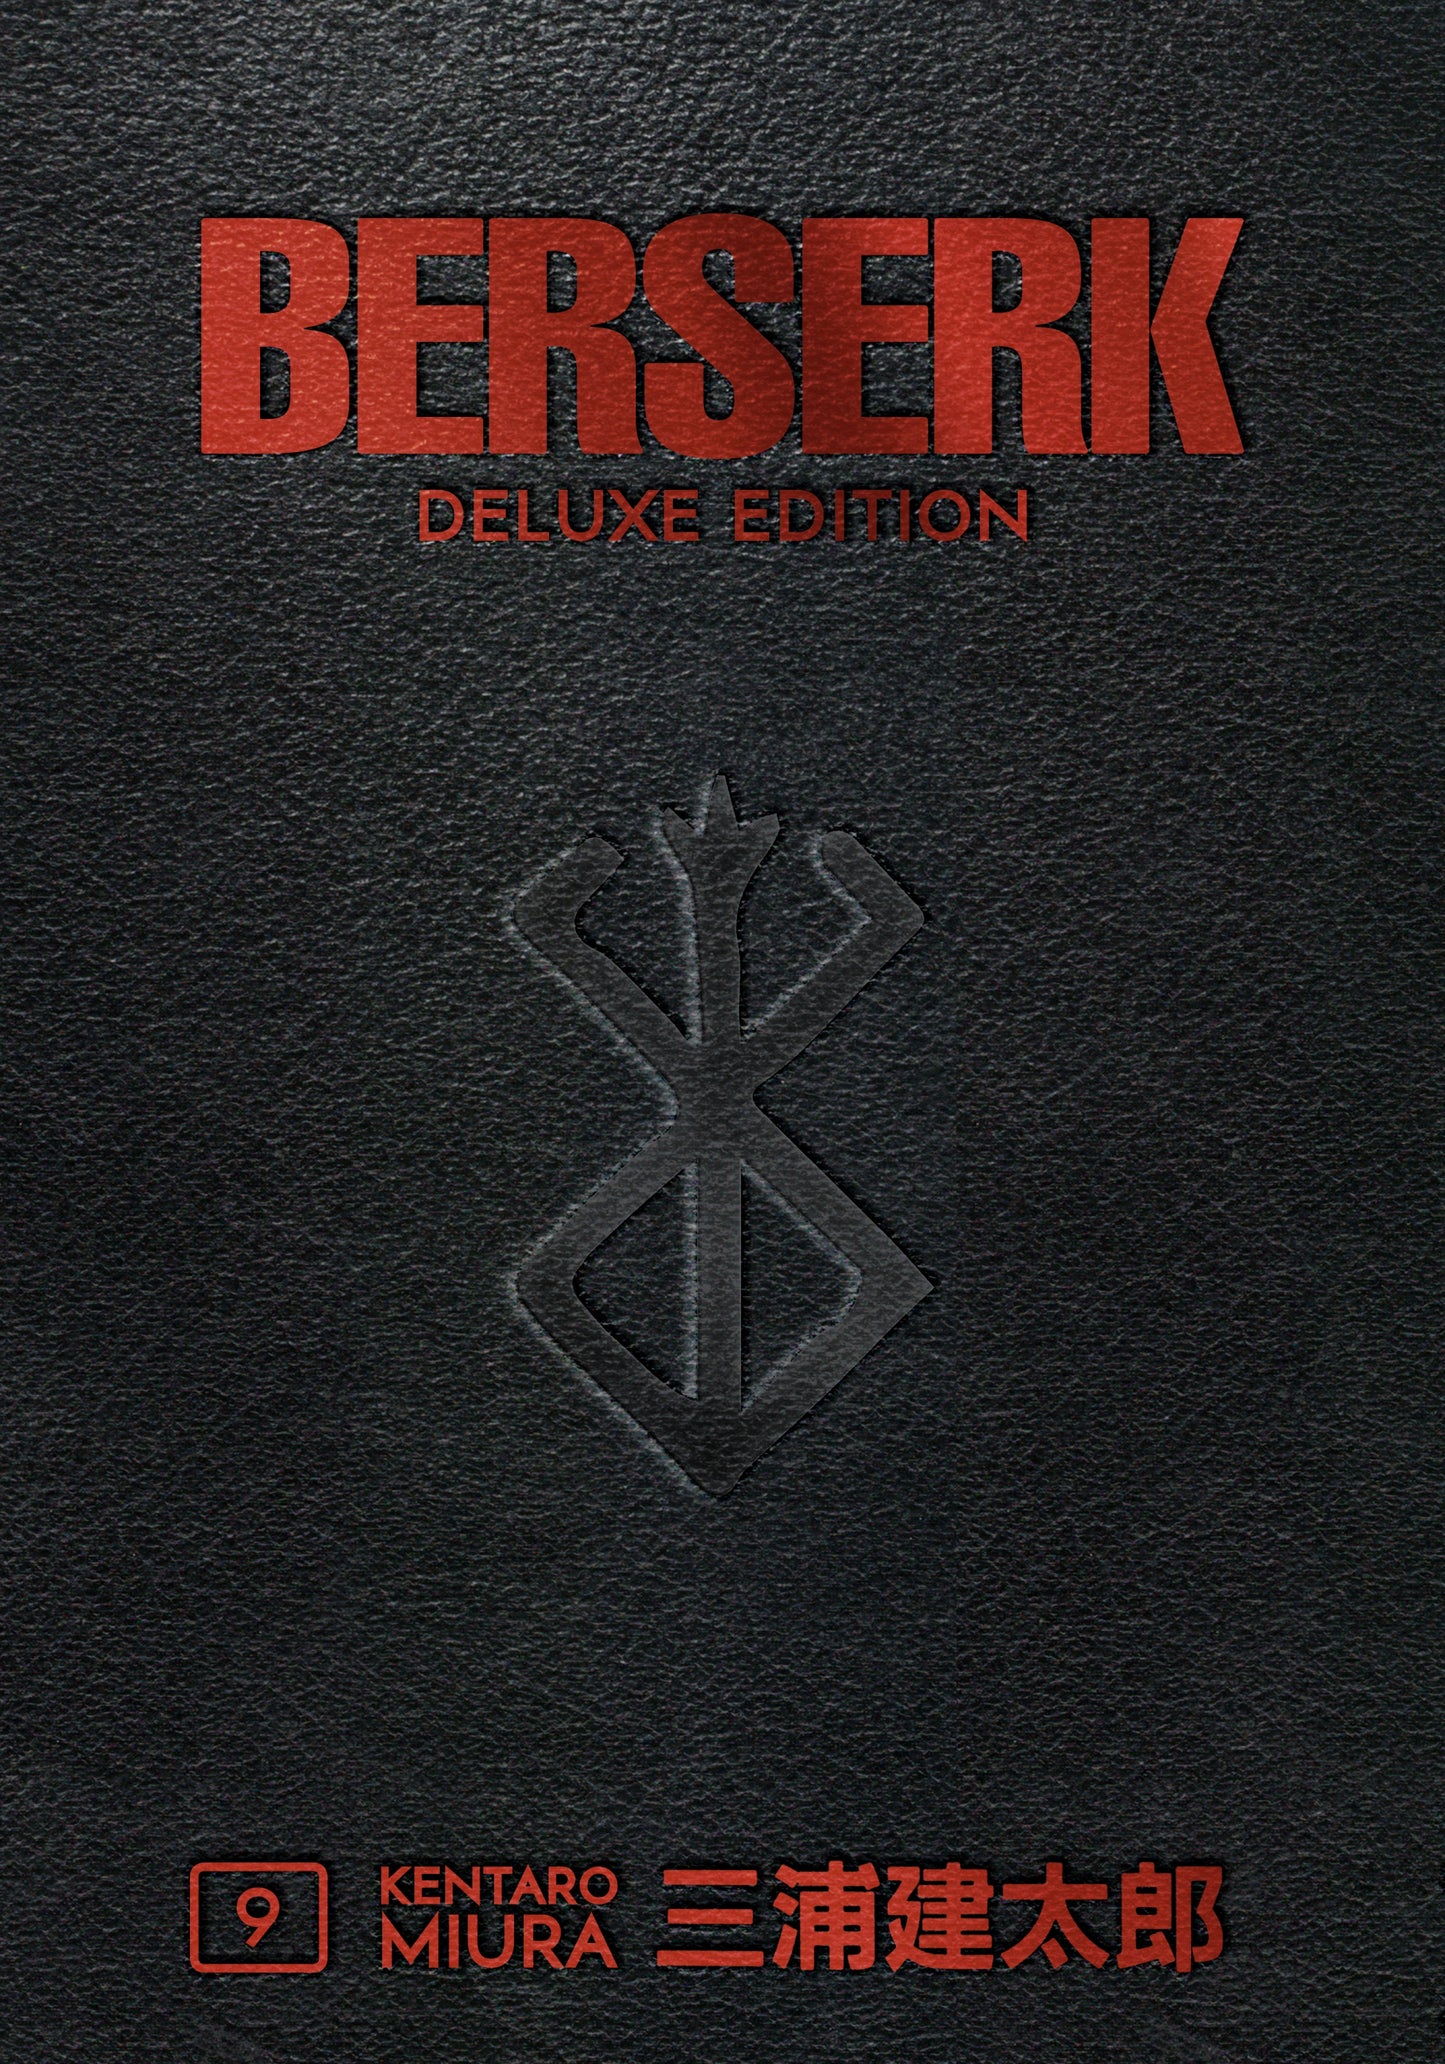 Berserk Deluxe Edition Volume 9